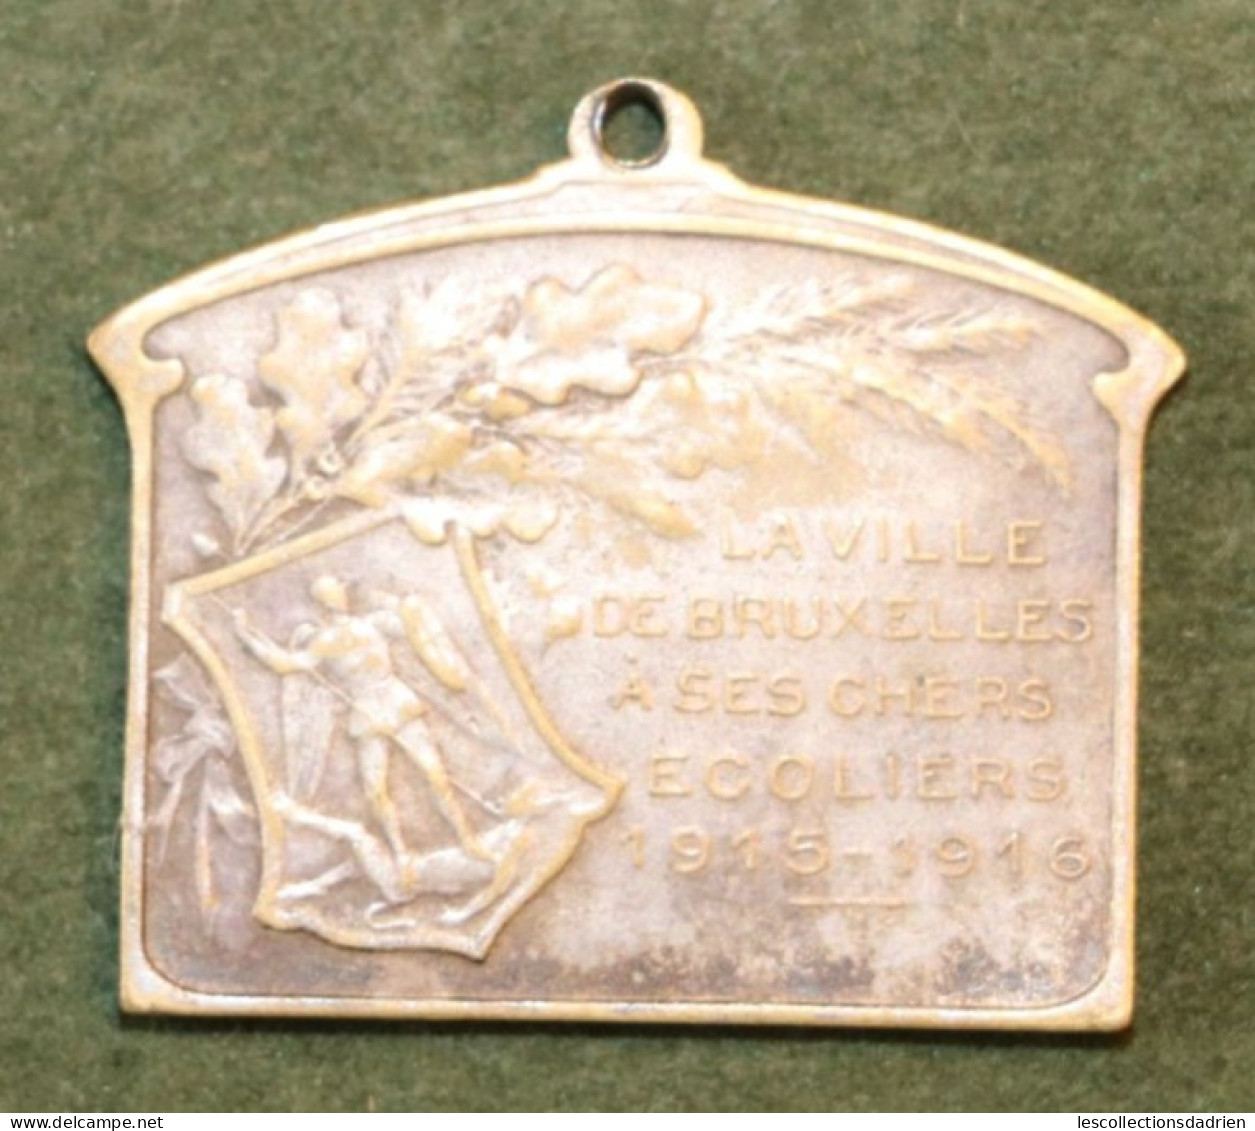 Médaille Belge Bruxelles à Ses écoliers 1915-1916 Guerre 14-18  - Belgian Medal WWI Médaillette Journée Devreese - Belgique